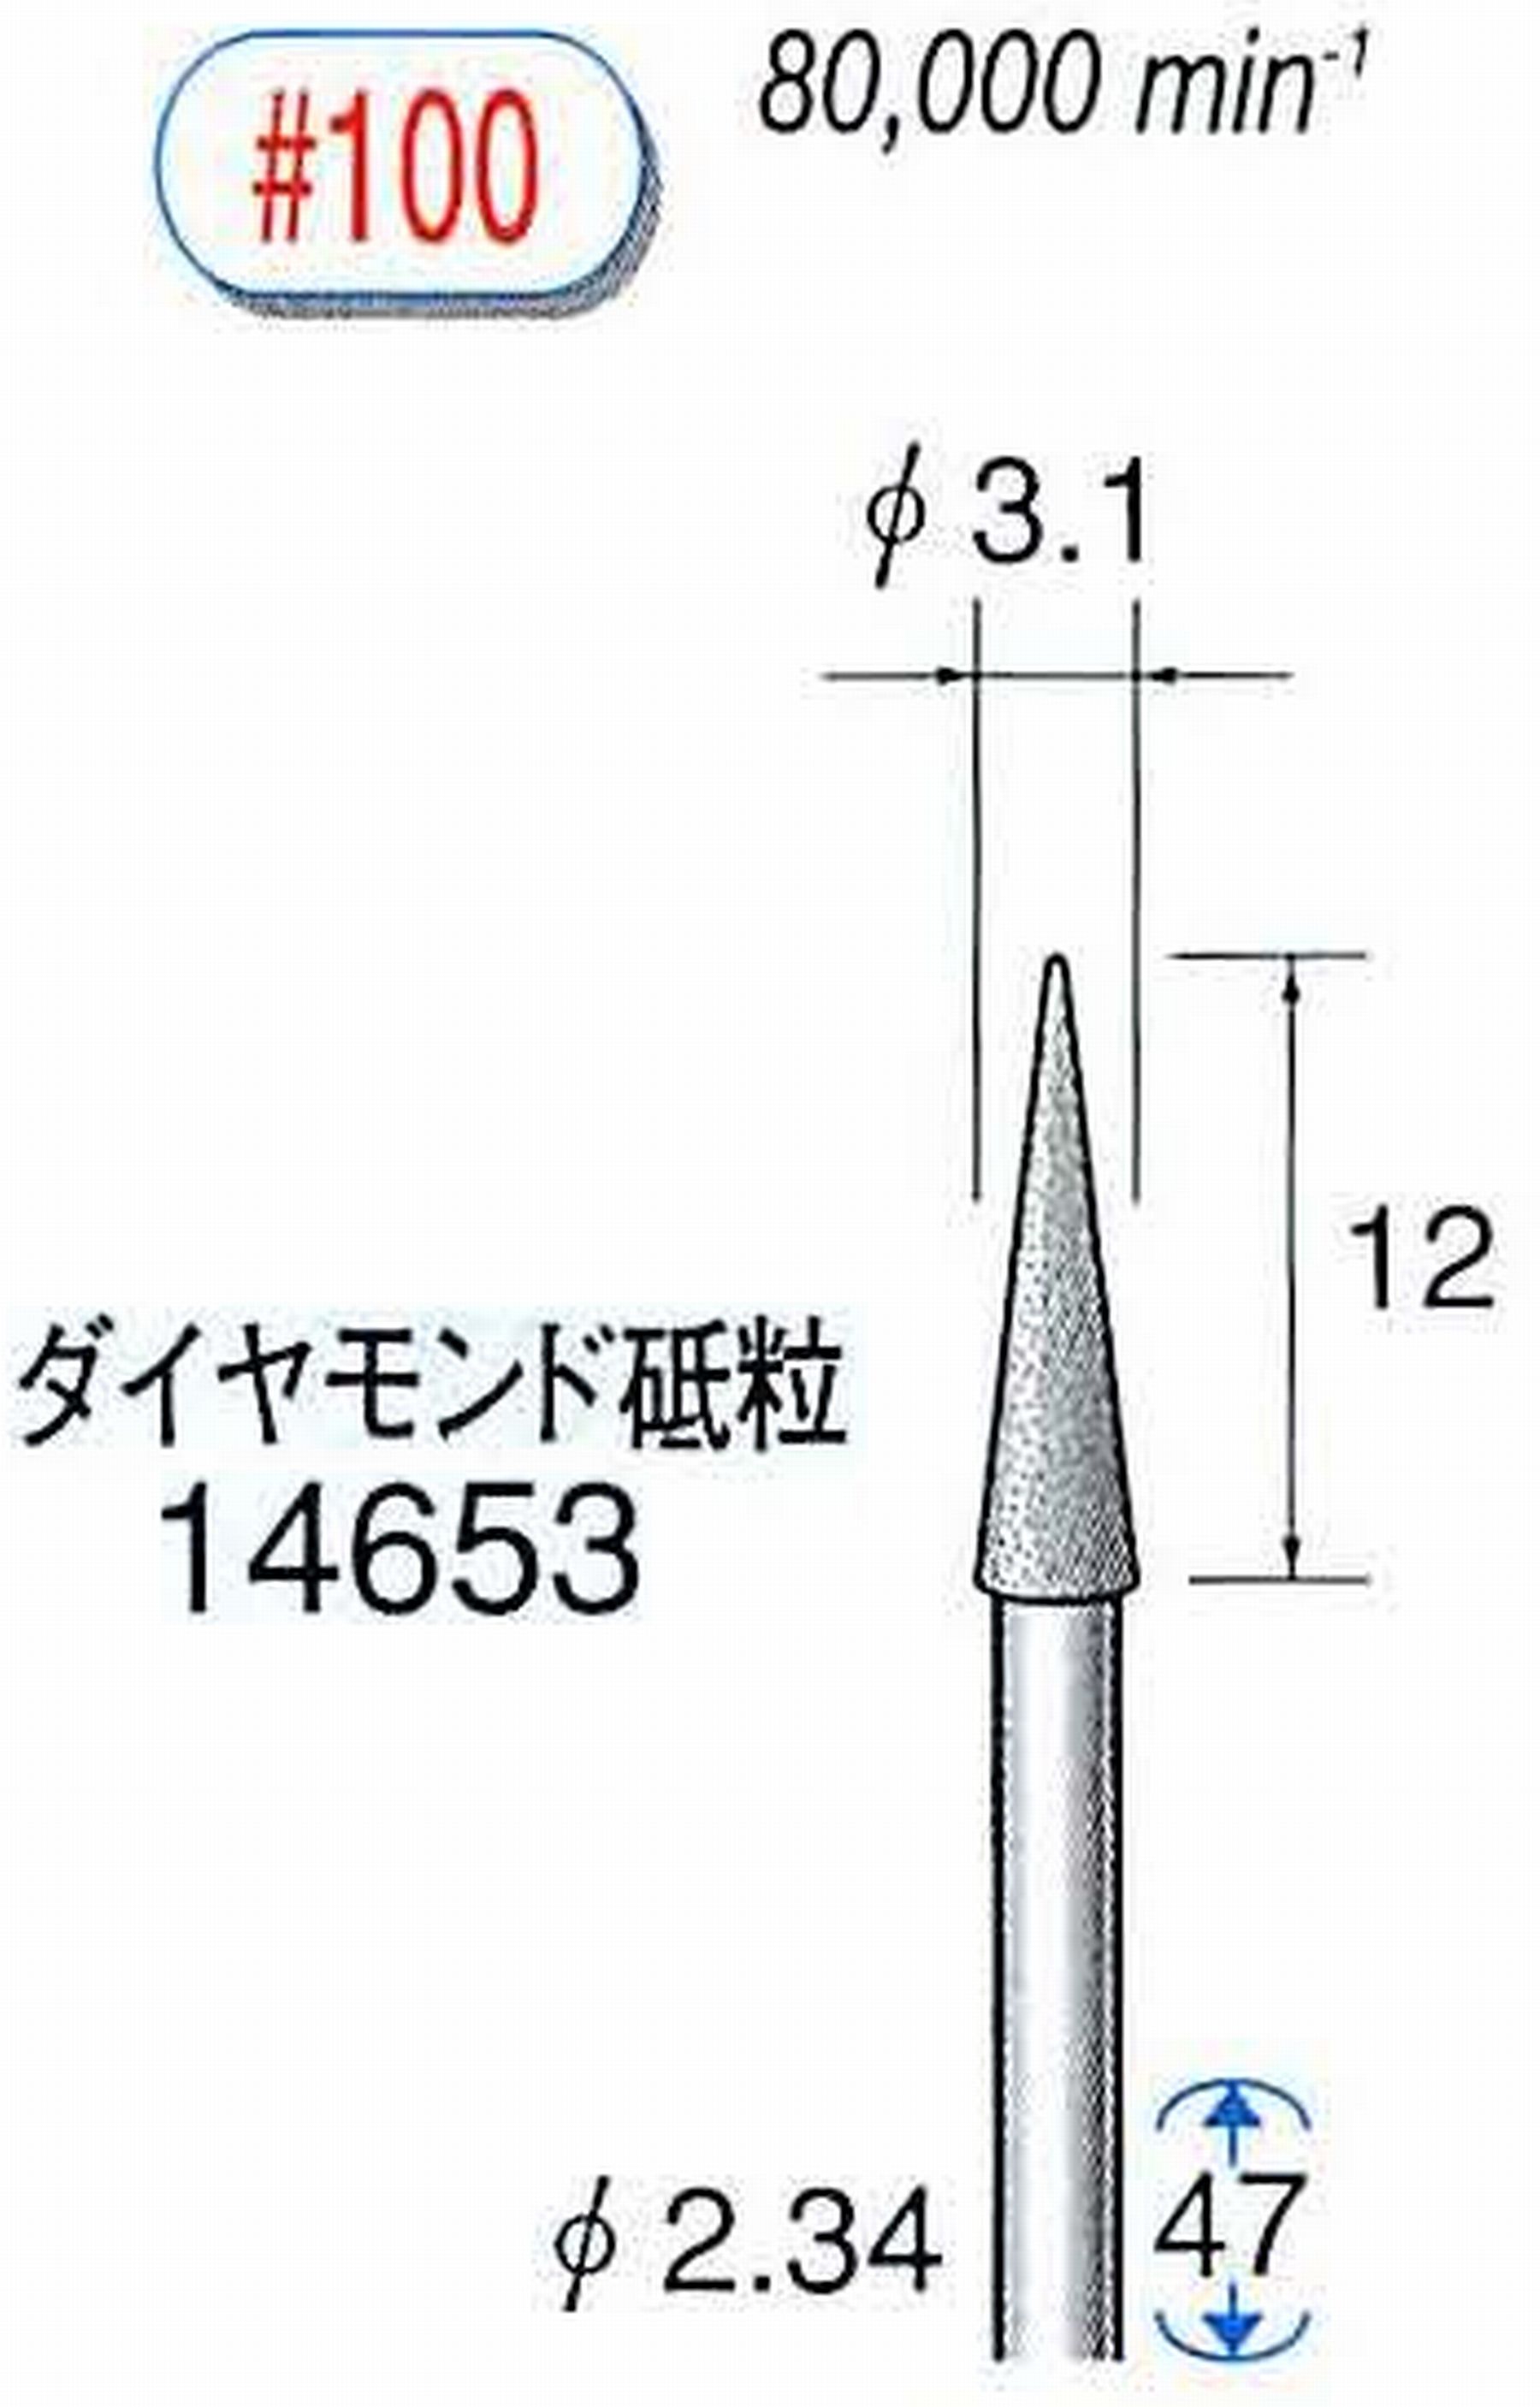 ナカニシ/NAKANISHI ダイヤモンドバー メタルボンドタイプ ダイヤモンド砥粒 軸径(シャンク)φ2.34mm 14653